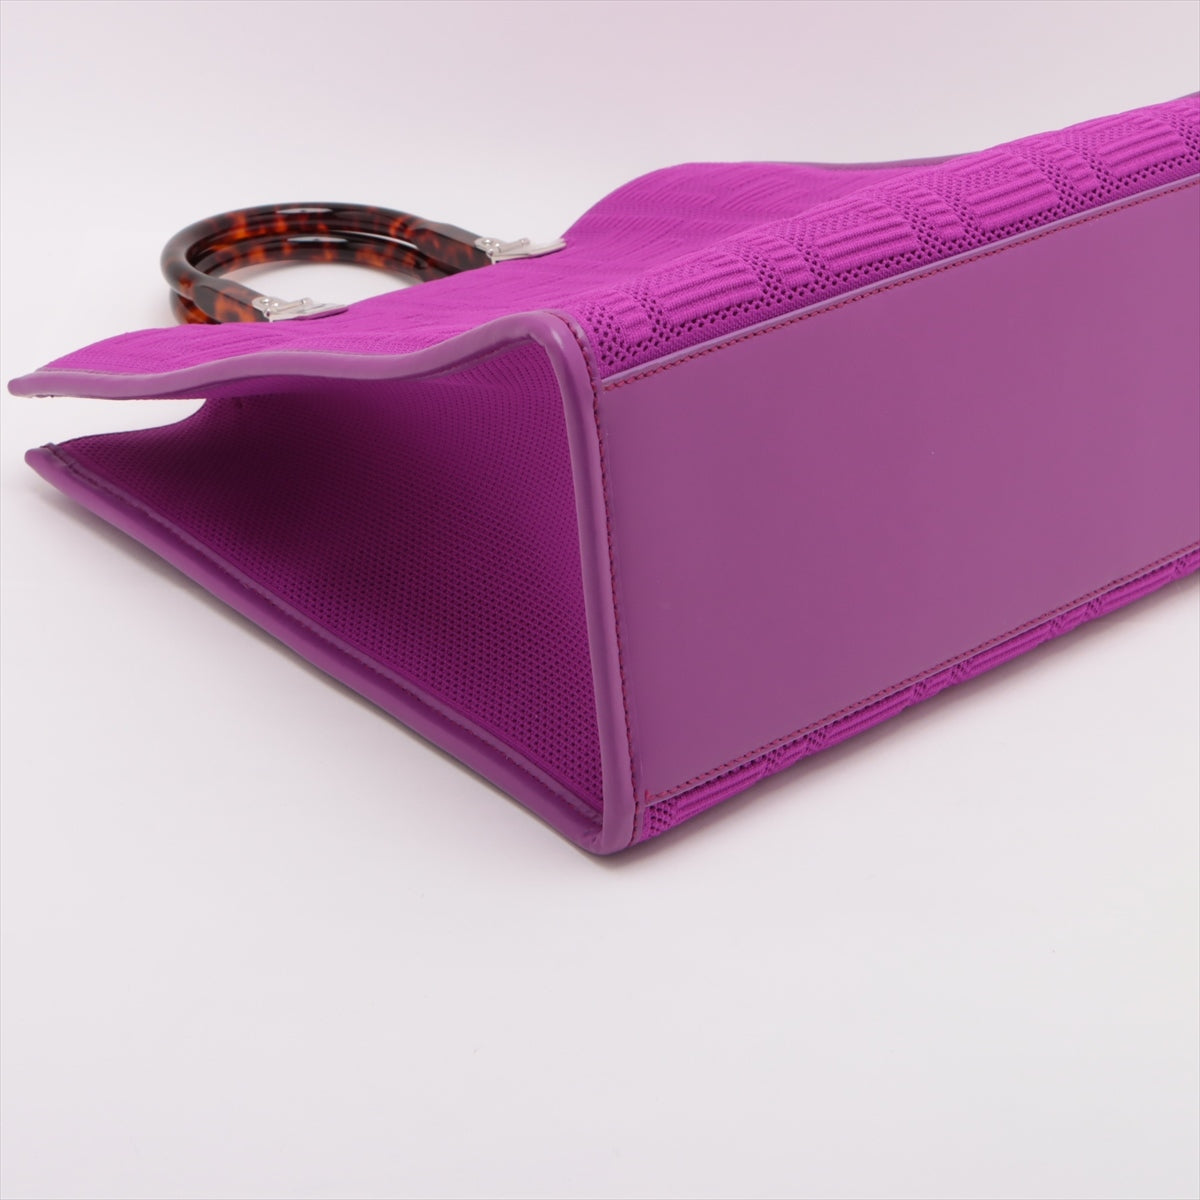 Fendi Sunshine Medium Canvas & Leather Tote Bag Purple 8BH386